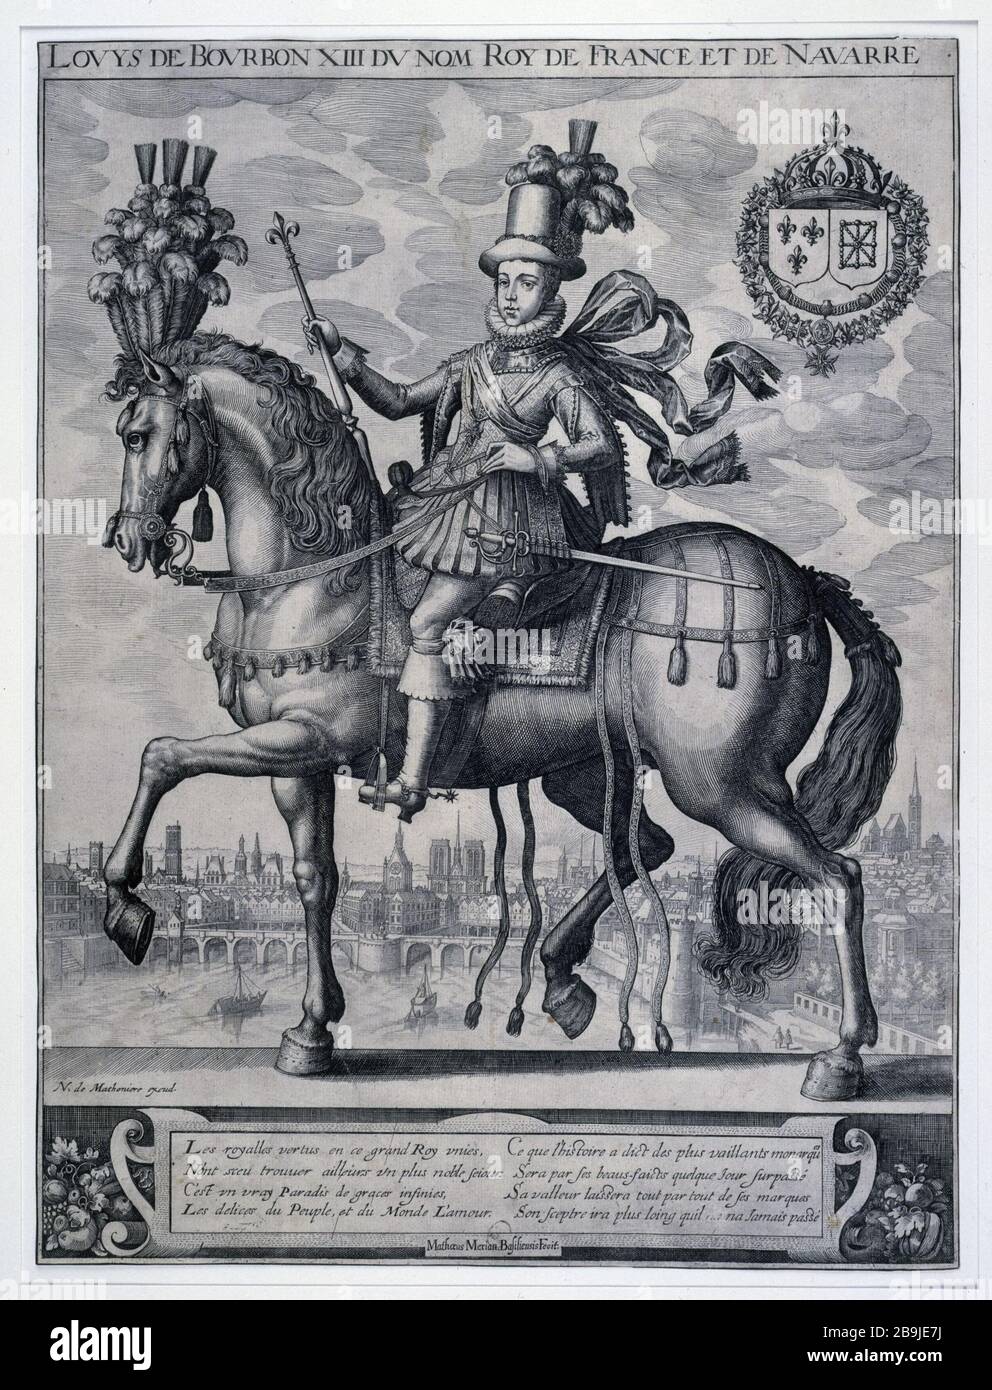 Louis XIII named Bourbon King of France and Navarre Nicolas de Mathonière (actif entre 1610 et 1622). 'Louis de Bourbon XIII du nom Roi de France et de Navarre'. Gravure. Paris, musée Carnavalet. Stock Photo